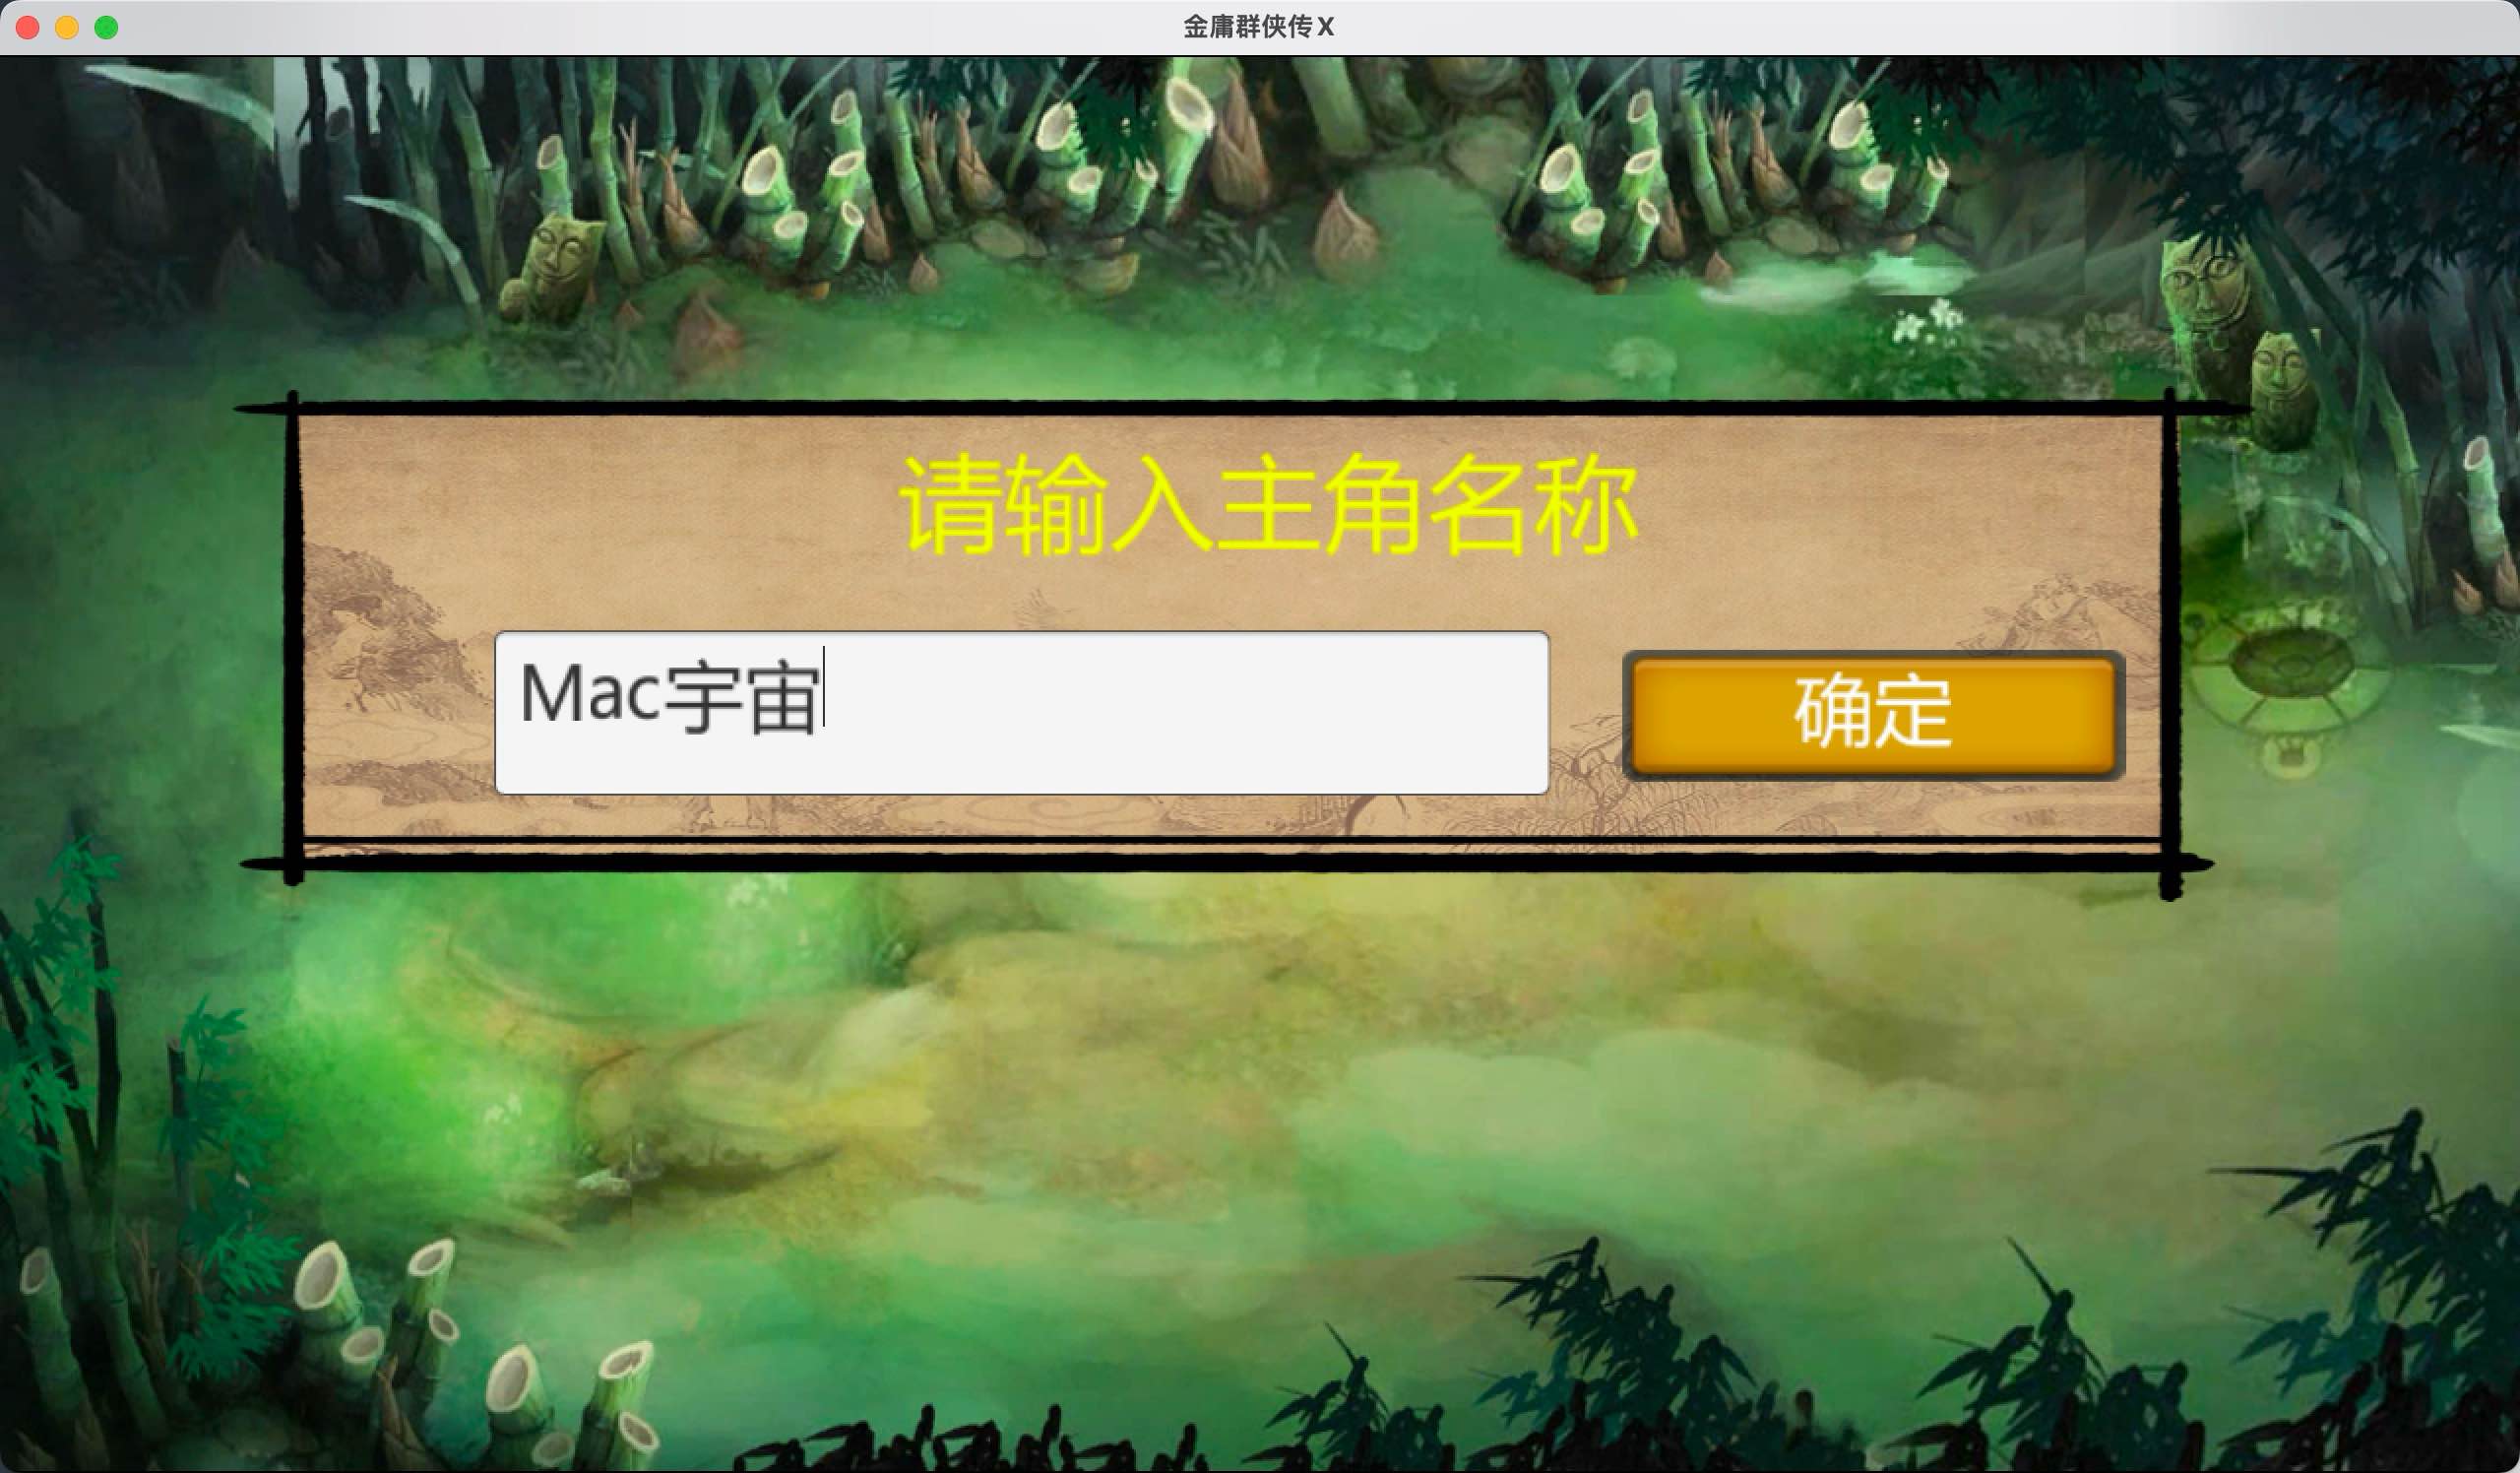 金庸群侠传X for Mac v1.1.0.6 中文移植版 苹果电脑